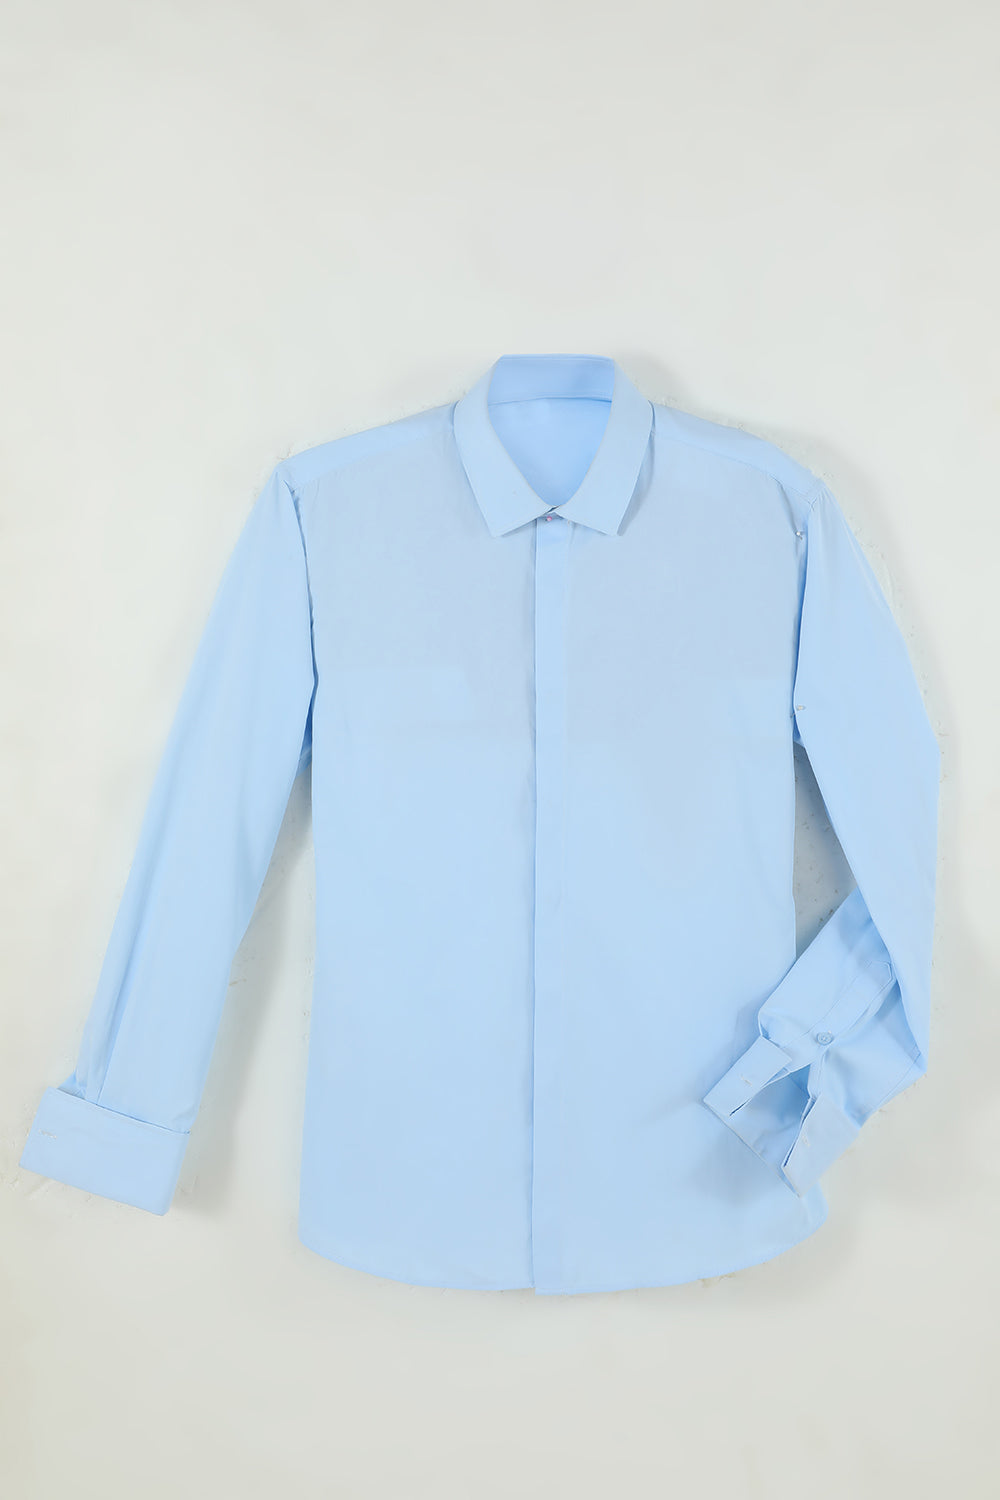 Men's Light Blue Collar Solid Long Sleeves Dress Shirt